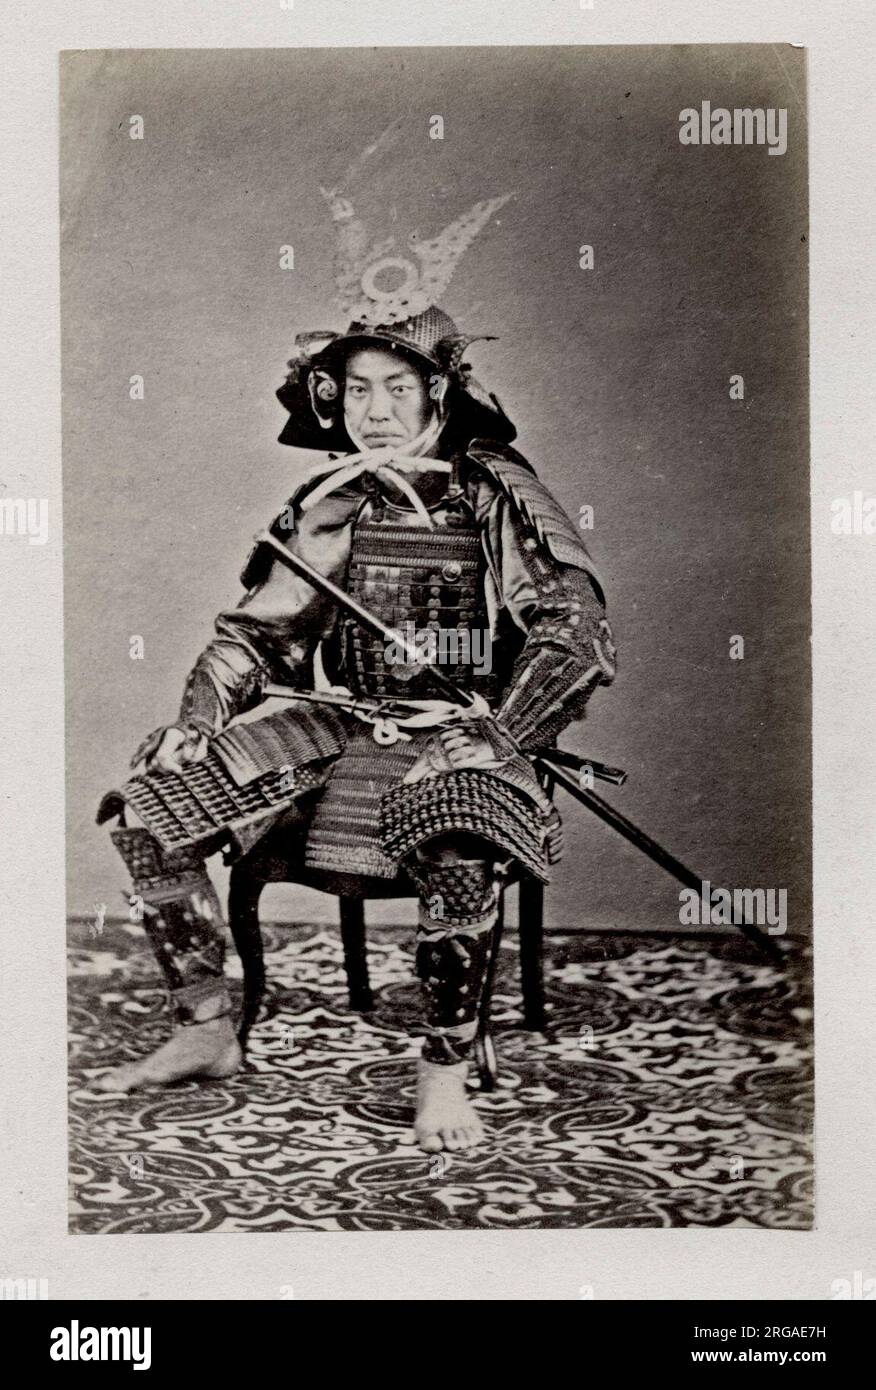 Fotografia d'epoca del XIX secolo - ritratto fotografico di origini giapponesi, probabilmente opera del fotografo giapponese Shimooka Renjo - samurai in armatura Foto Stock